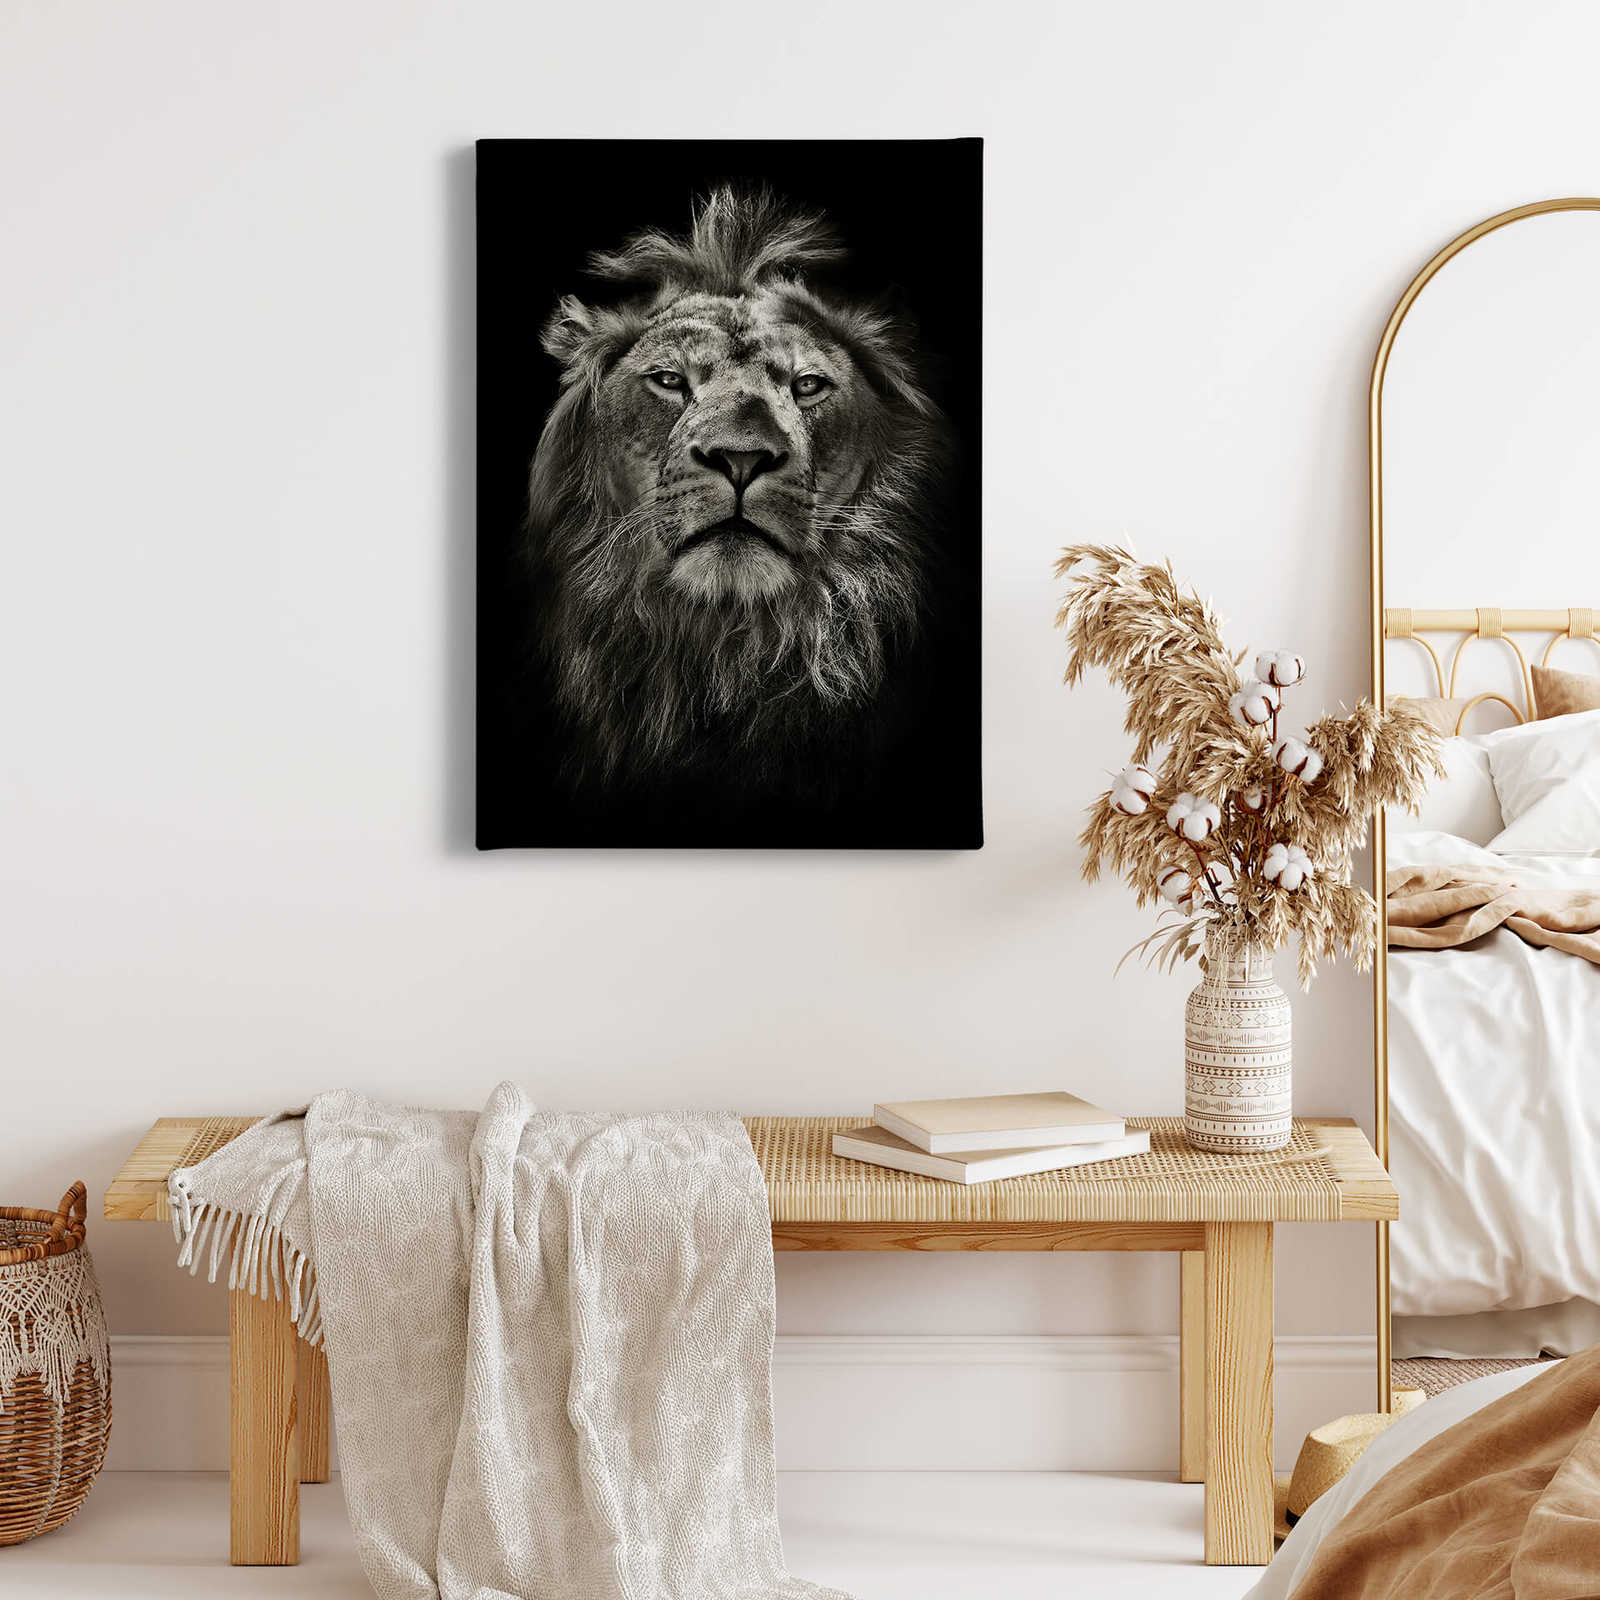             Lienzo Retrato de león - 0,50 m x 0,70 m
        